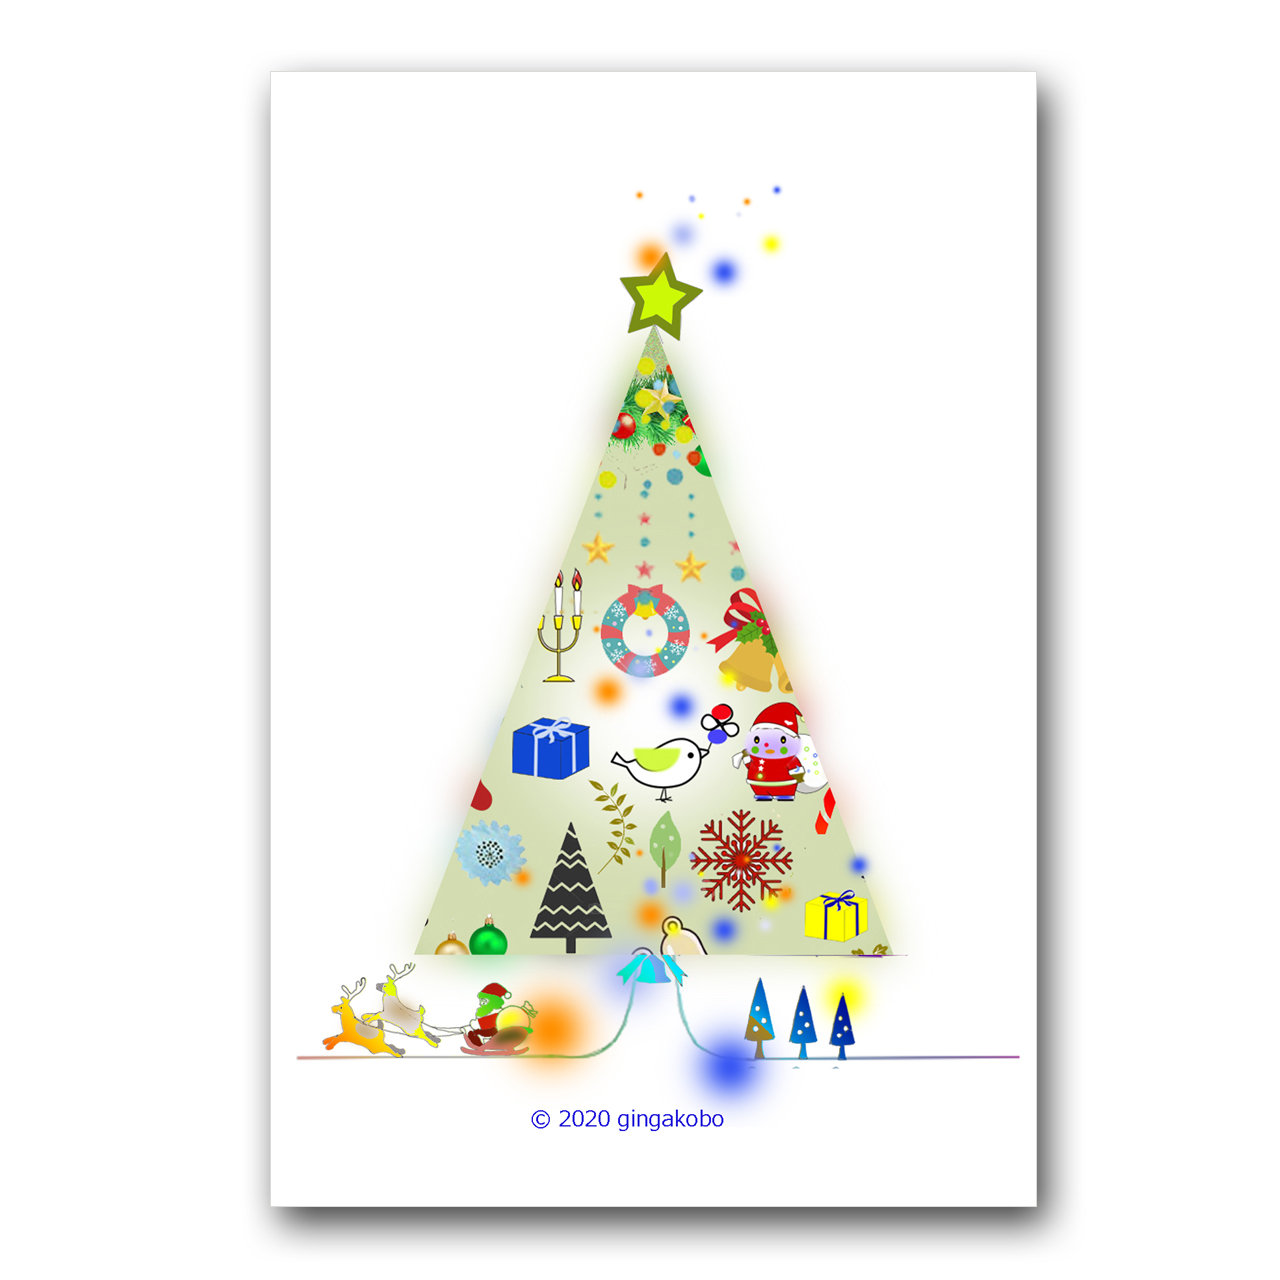 ハッピークリスマス クリスマスツリー サンタクロース ほっこり癒しのイラストポストカード2枚組 No 12 Iichi ハンドメイド クラフト作品 手仕事品の通販